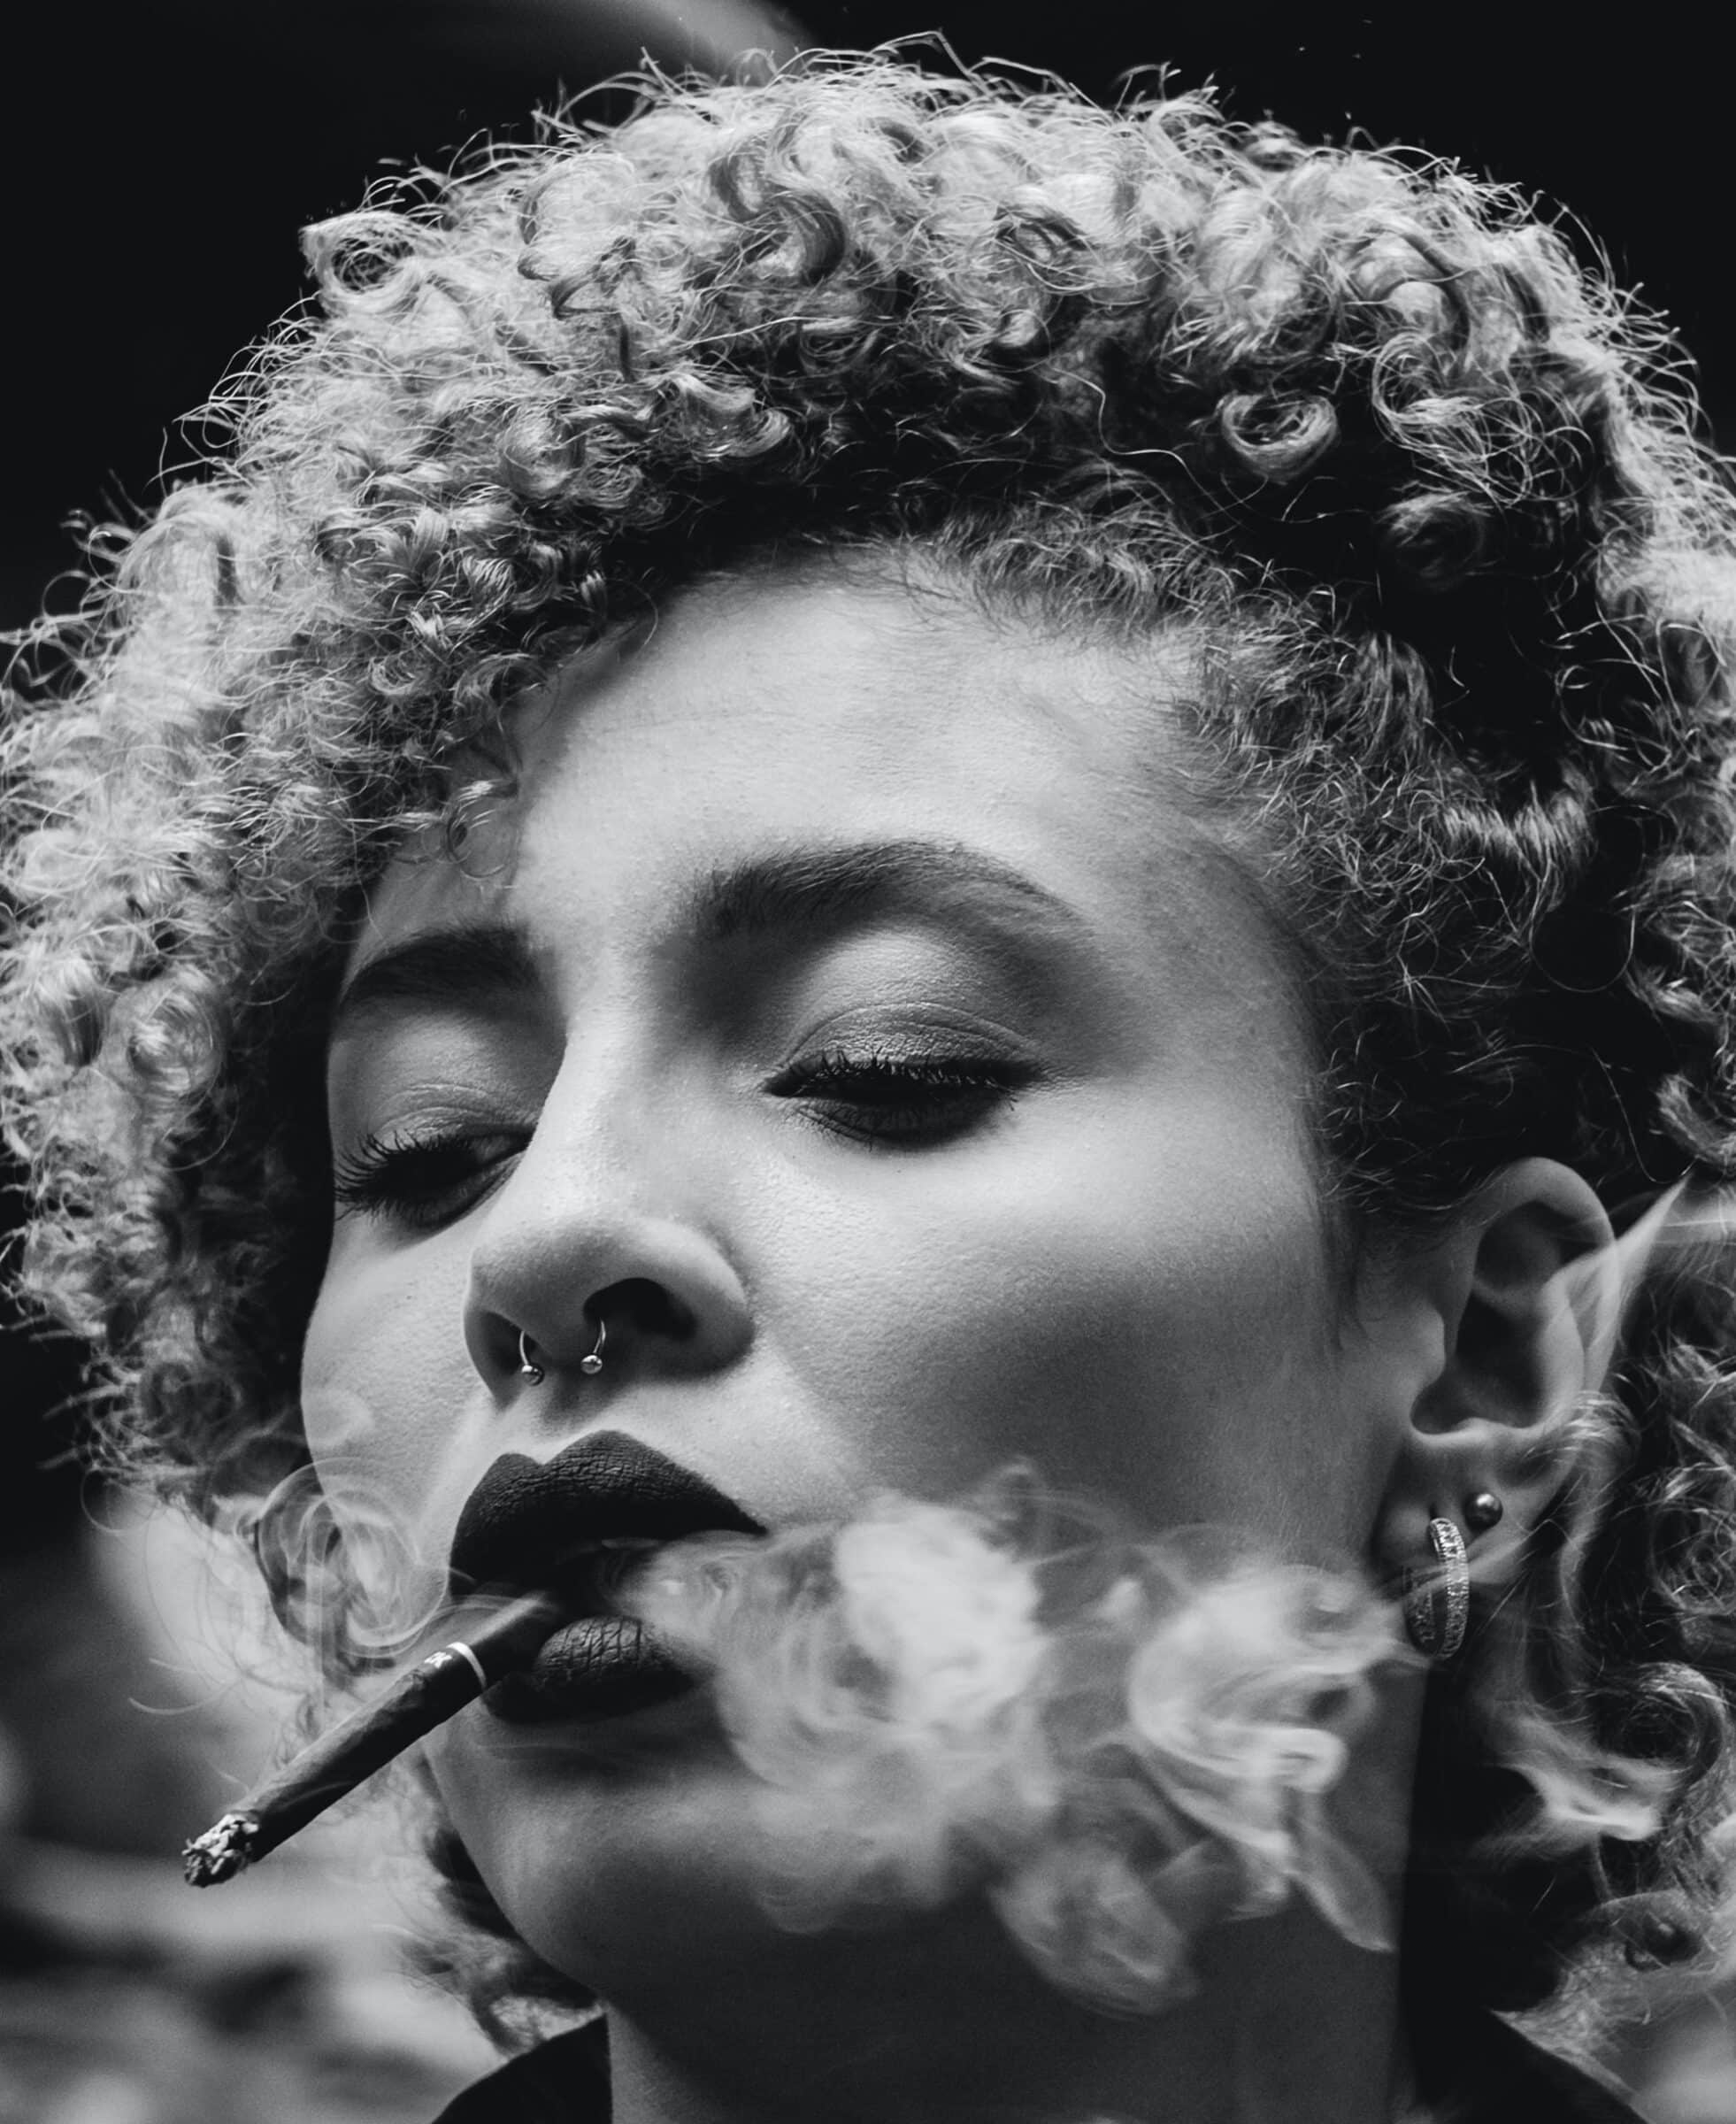 girl smoking weed tumblr